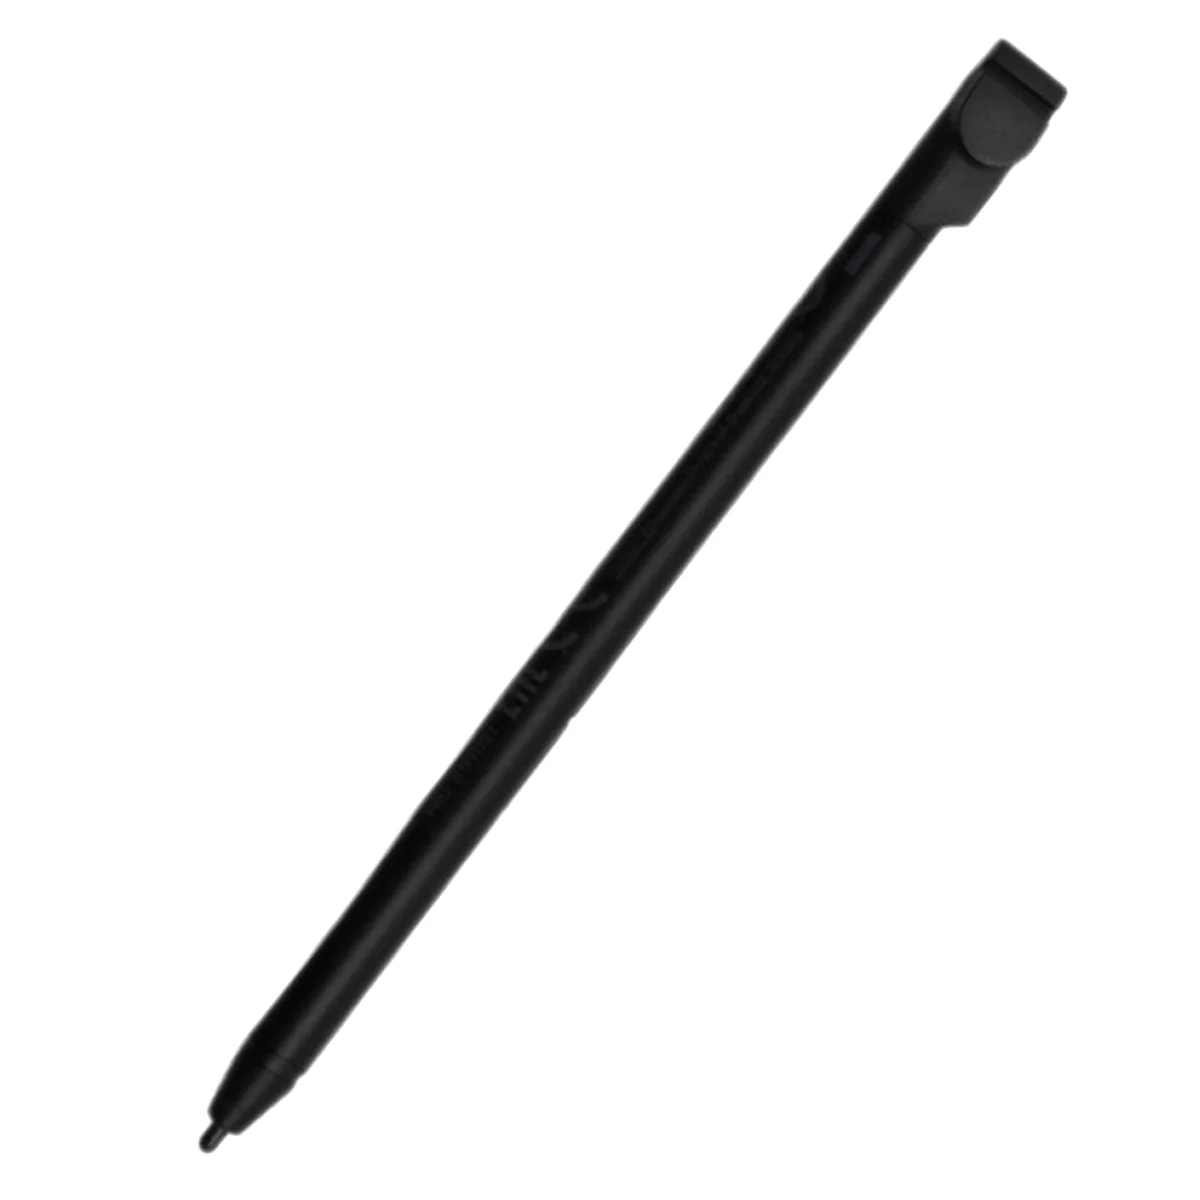 Penna stilo attiva per Notebook Lenovo 300E di seconda generazione (tipo 81 m9 82GK) Laptop 01 fr721 5T71H13727